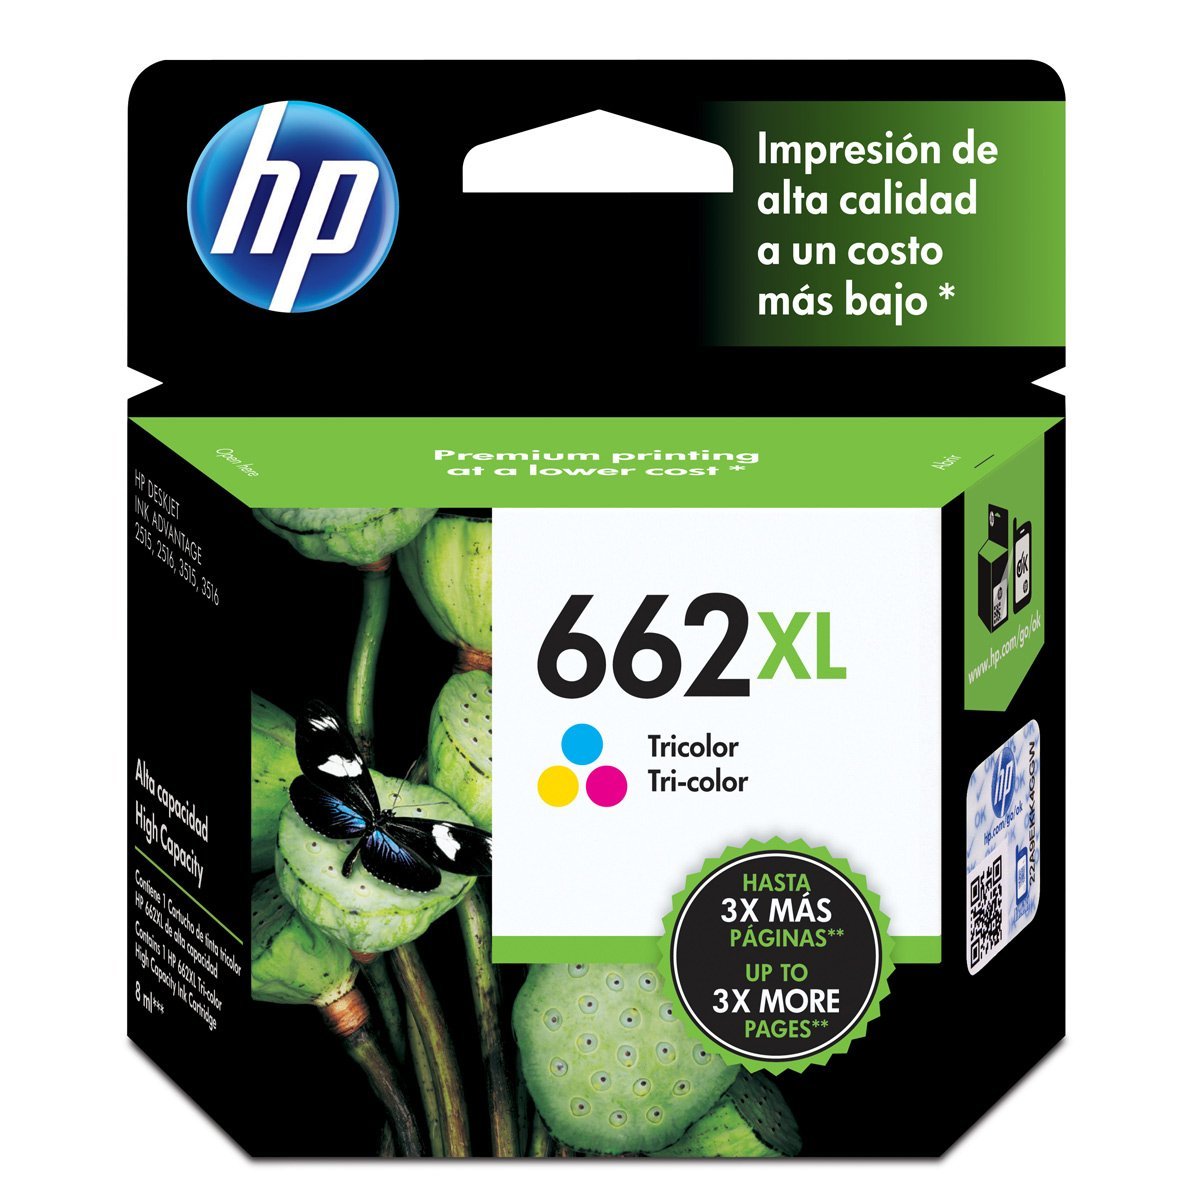 Tinta HP 662XL, tricolor, cartucho, XL - Multimax